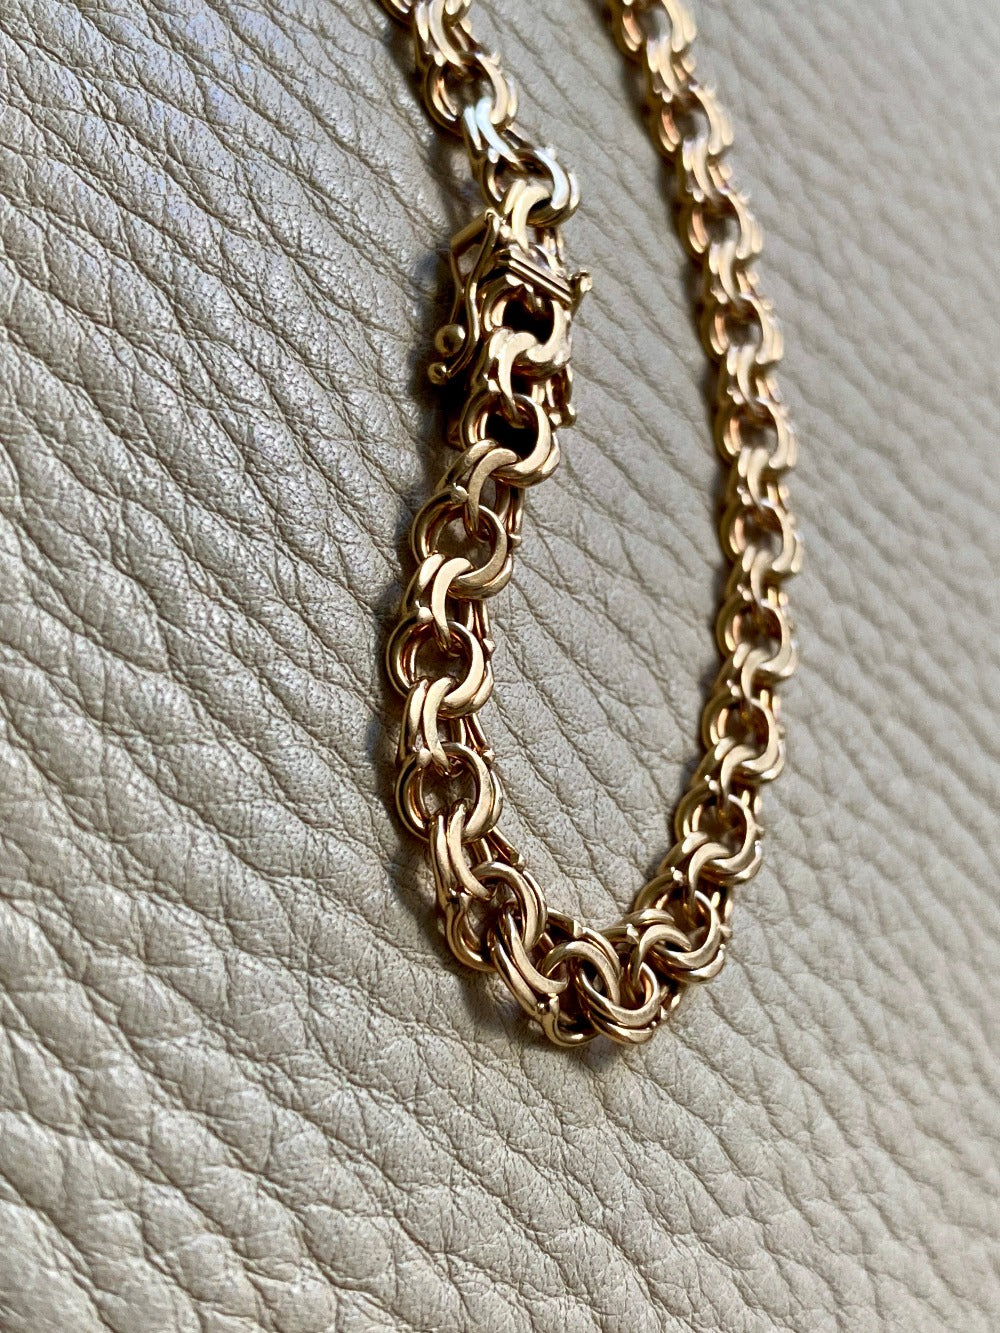 Vintage 1968 Double link solid 18k gold bracelet - 7.5 inch length